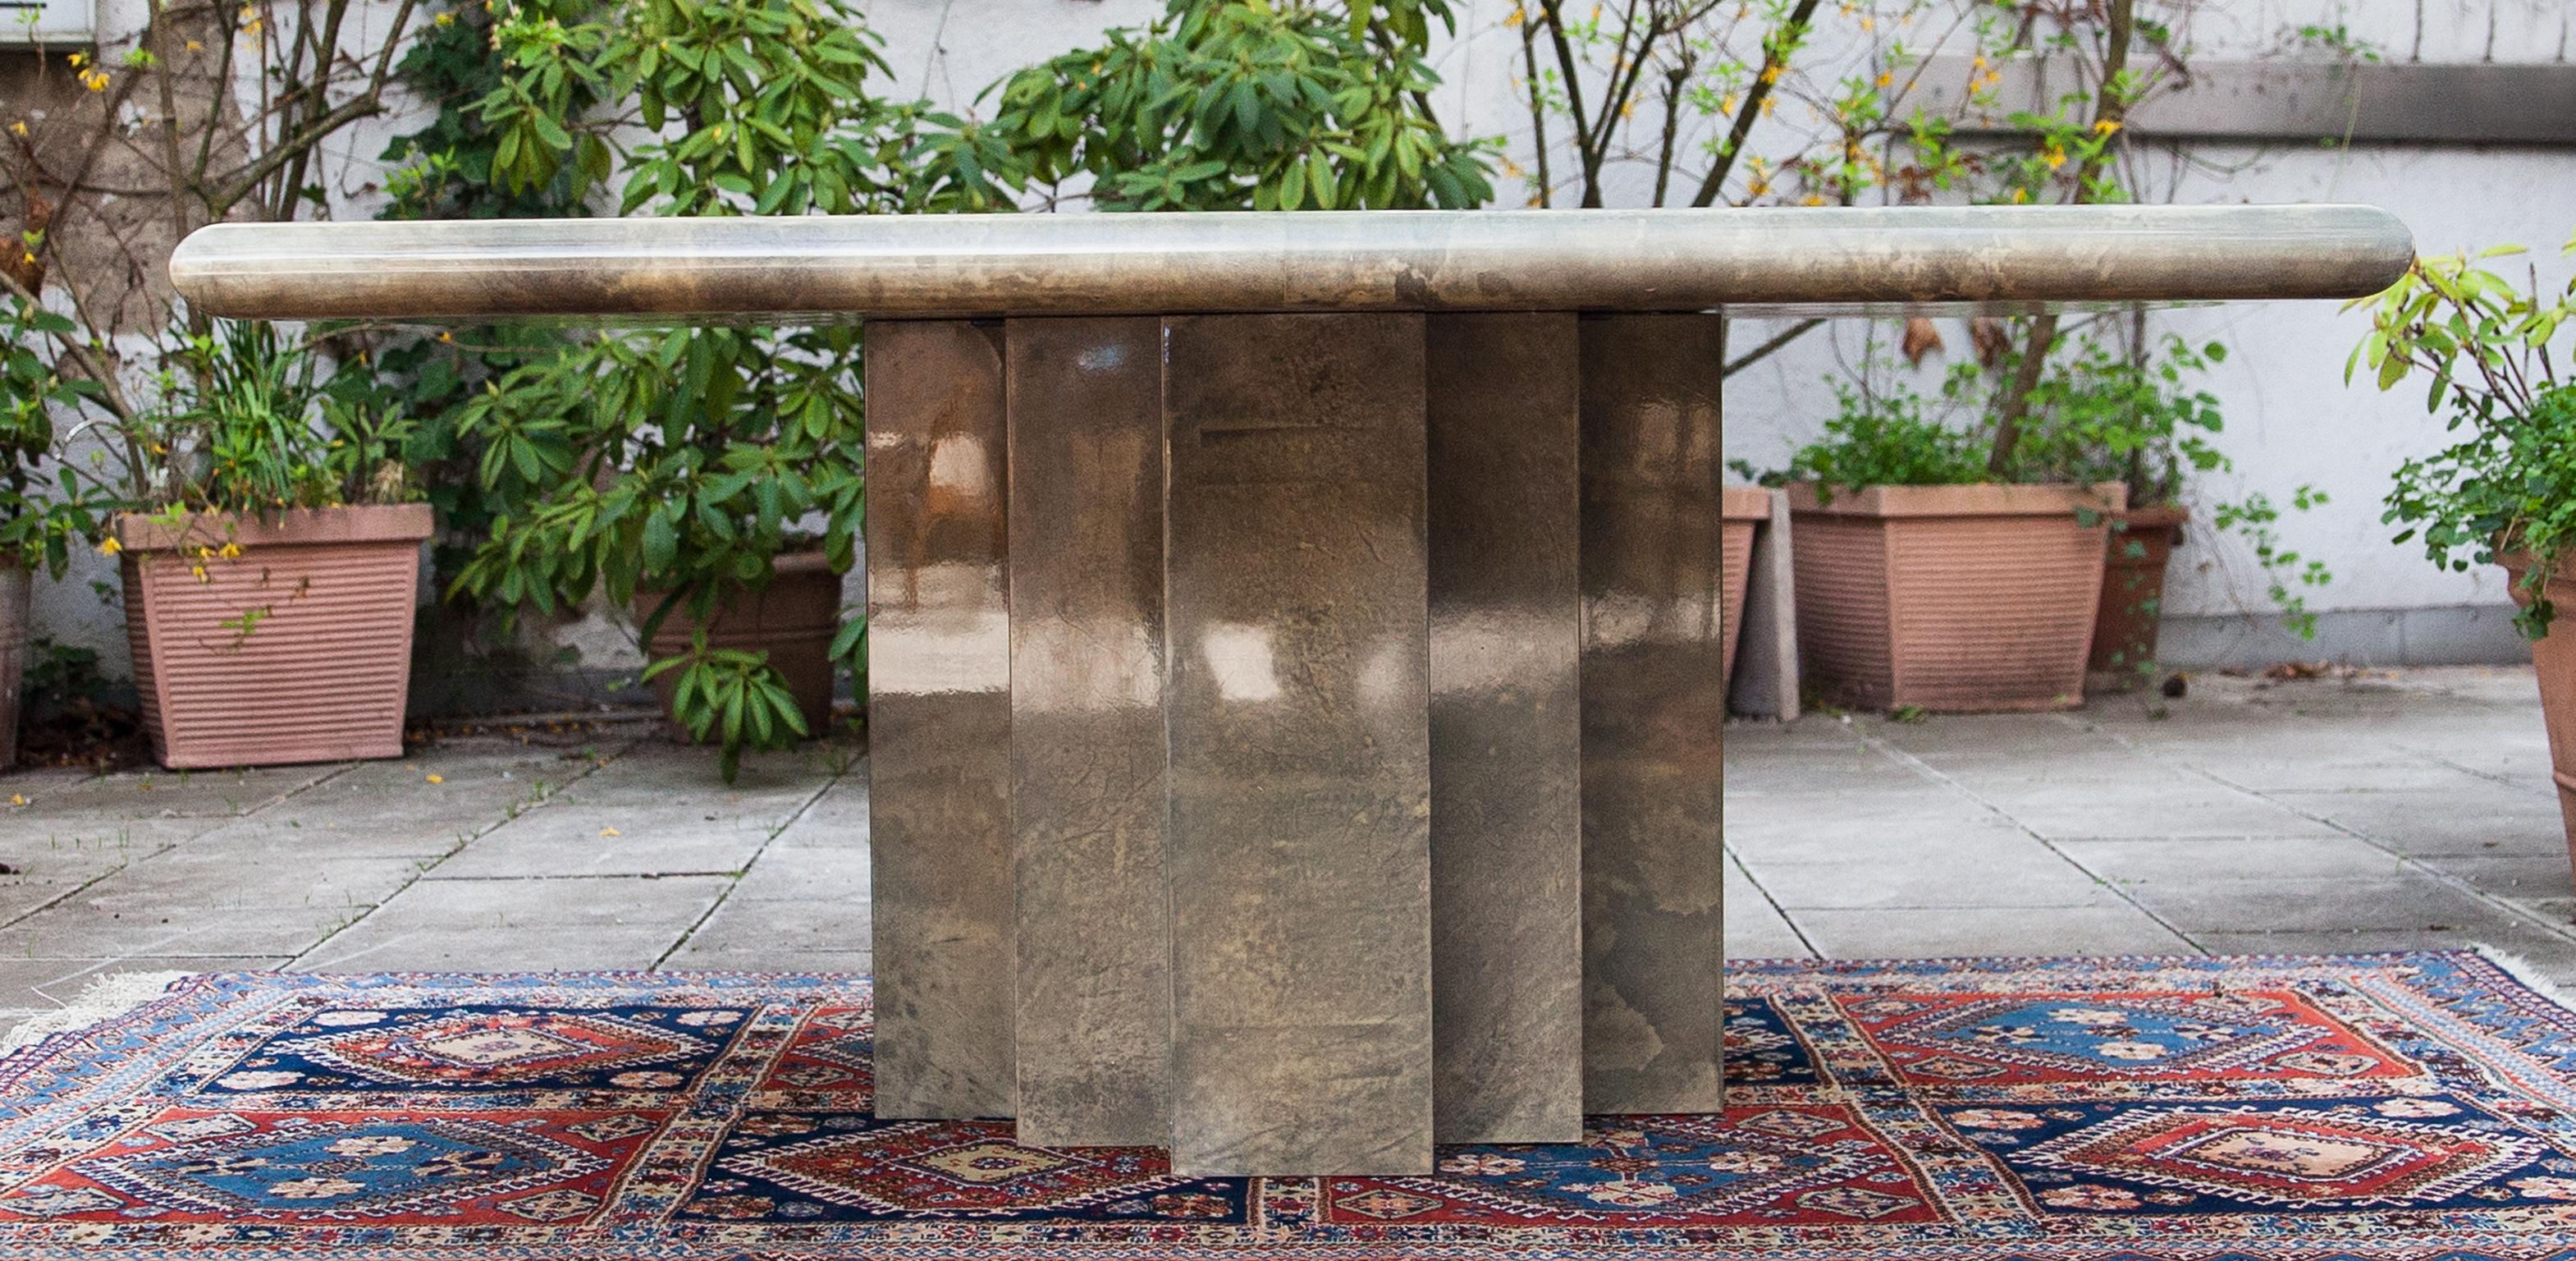 Der elegante quadratische Esstisch Aldo Tura aus Pergament basiert auf dem ikonischen achteckigen Säulengestell. Dieser Esstisch wurde in den 1970er Jahren gefertigt und ist in ausgezeichnetem Zustand.
Zusammen mit Künstlern wie Piero Fornasetti